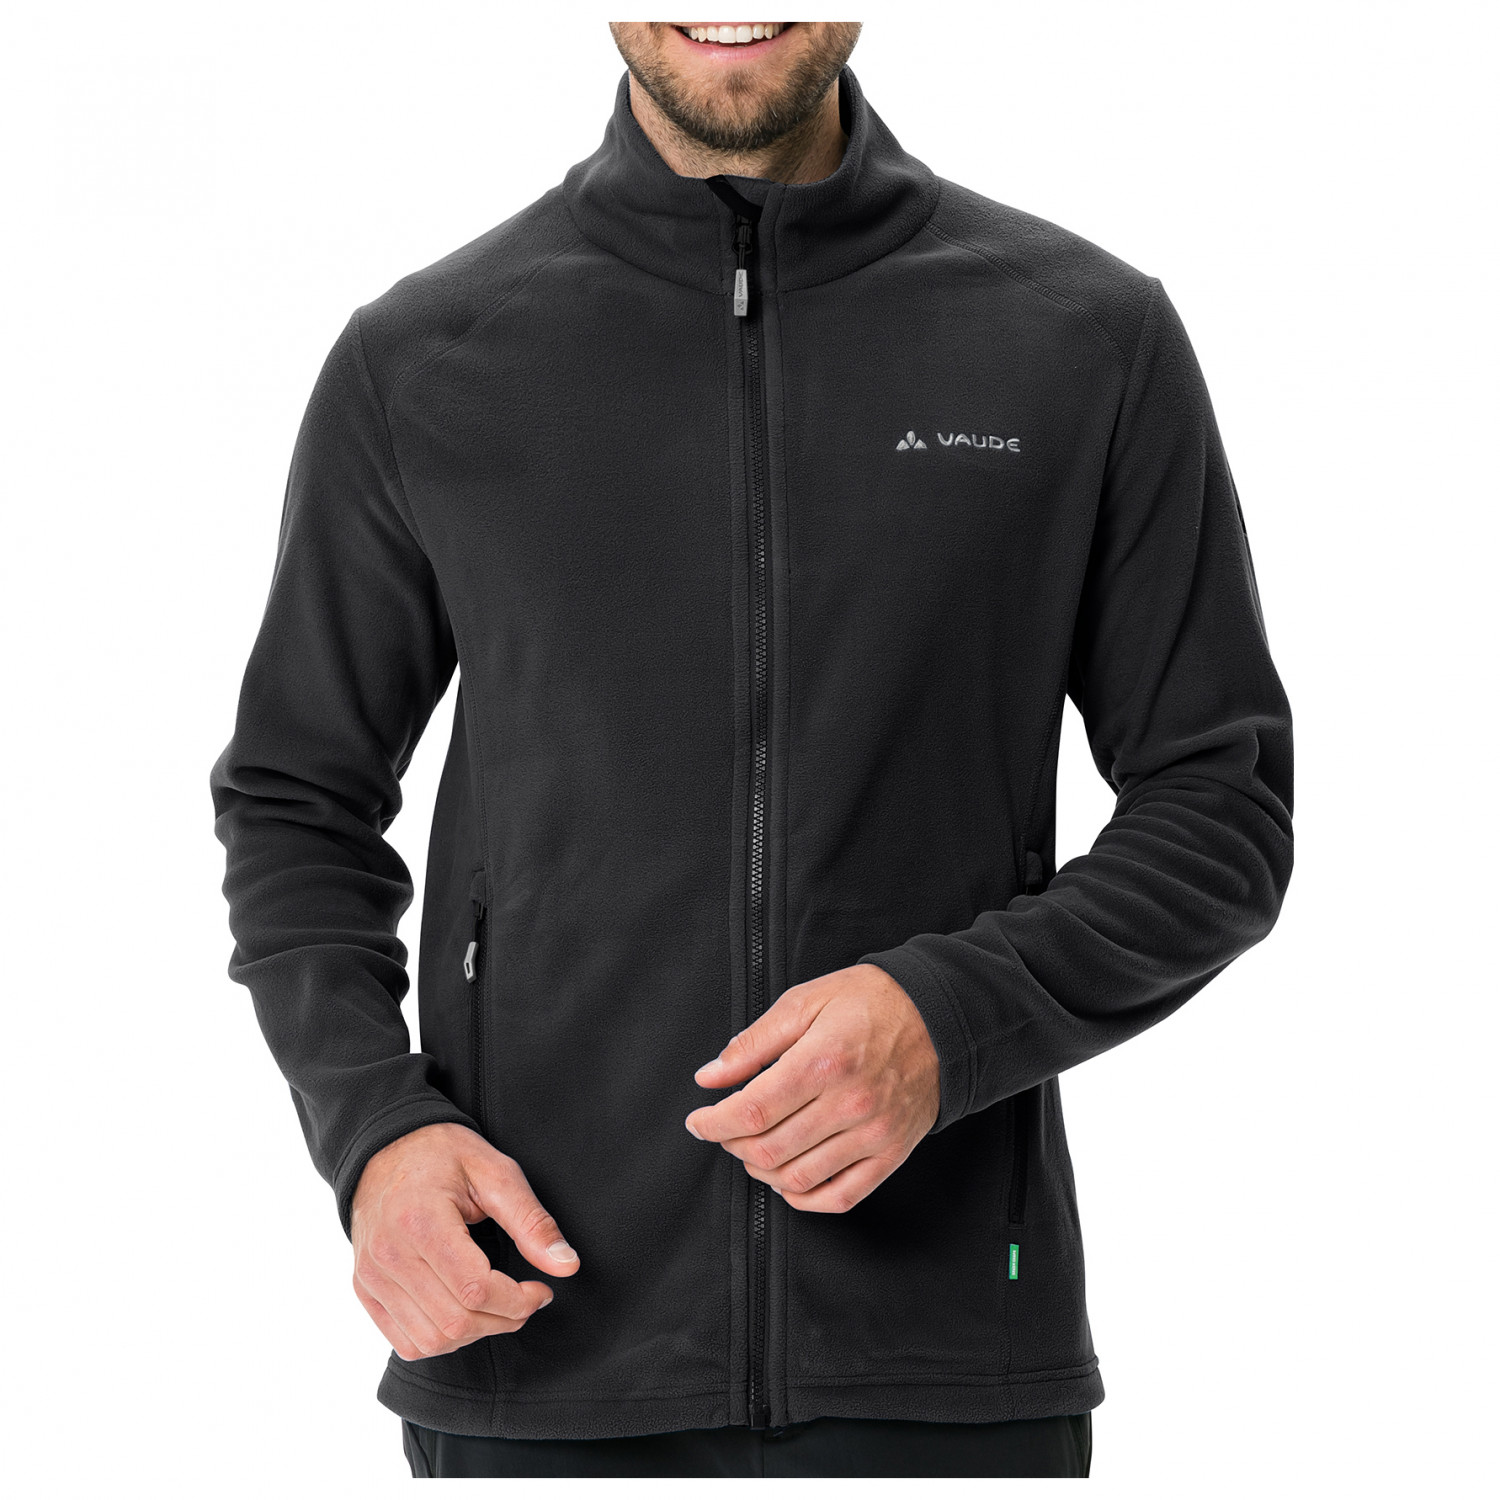 Флисовая жилетка Vaude Rosemoor Fleece II, черный дождевик водоотталкивающая куртка mens rosemoor jacket vaude цвет black